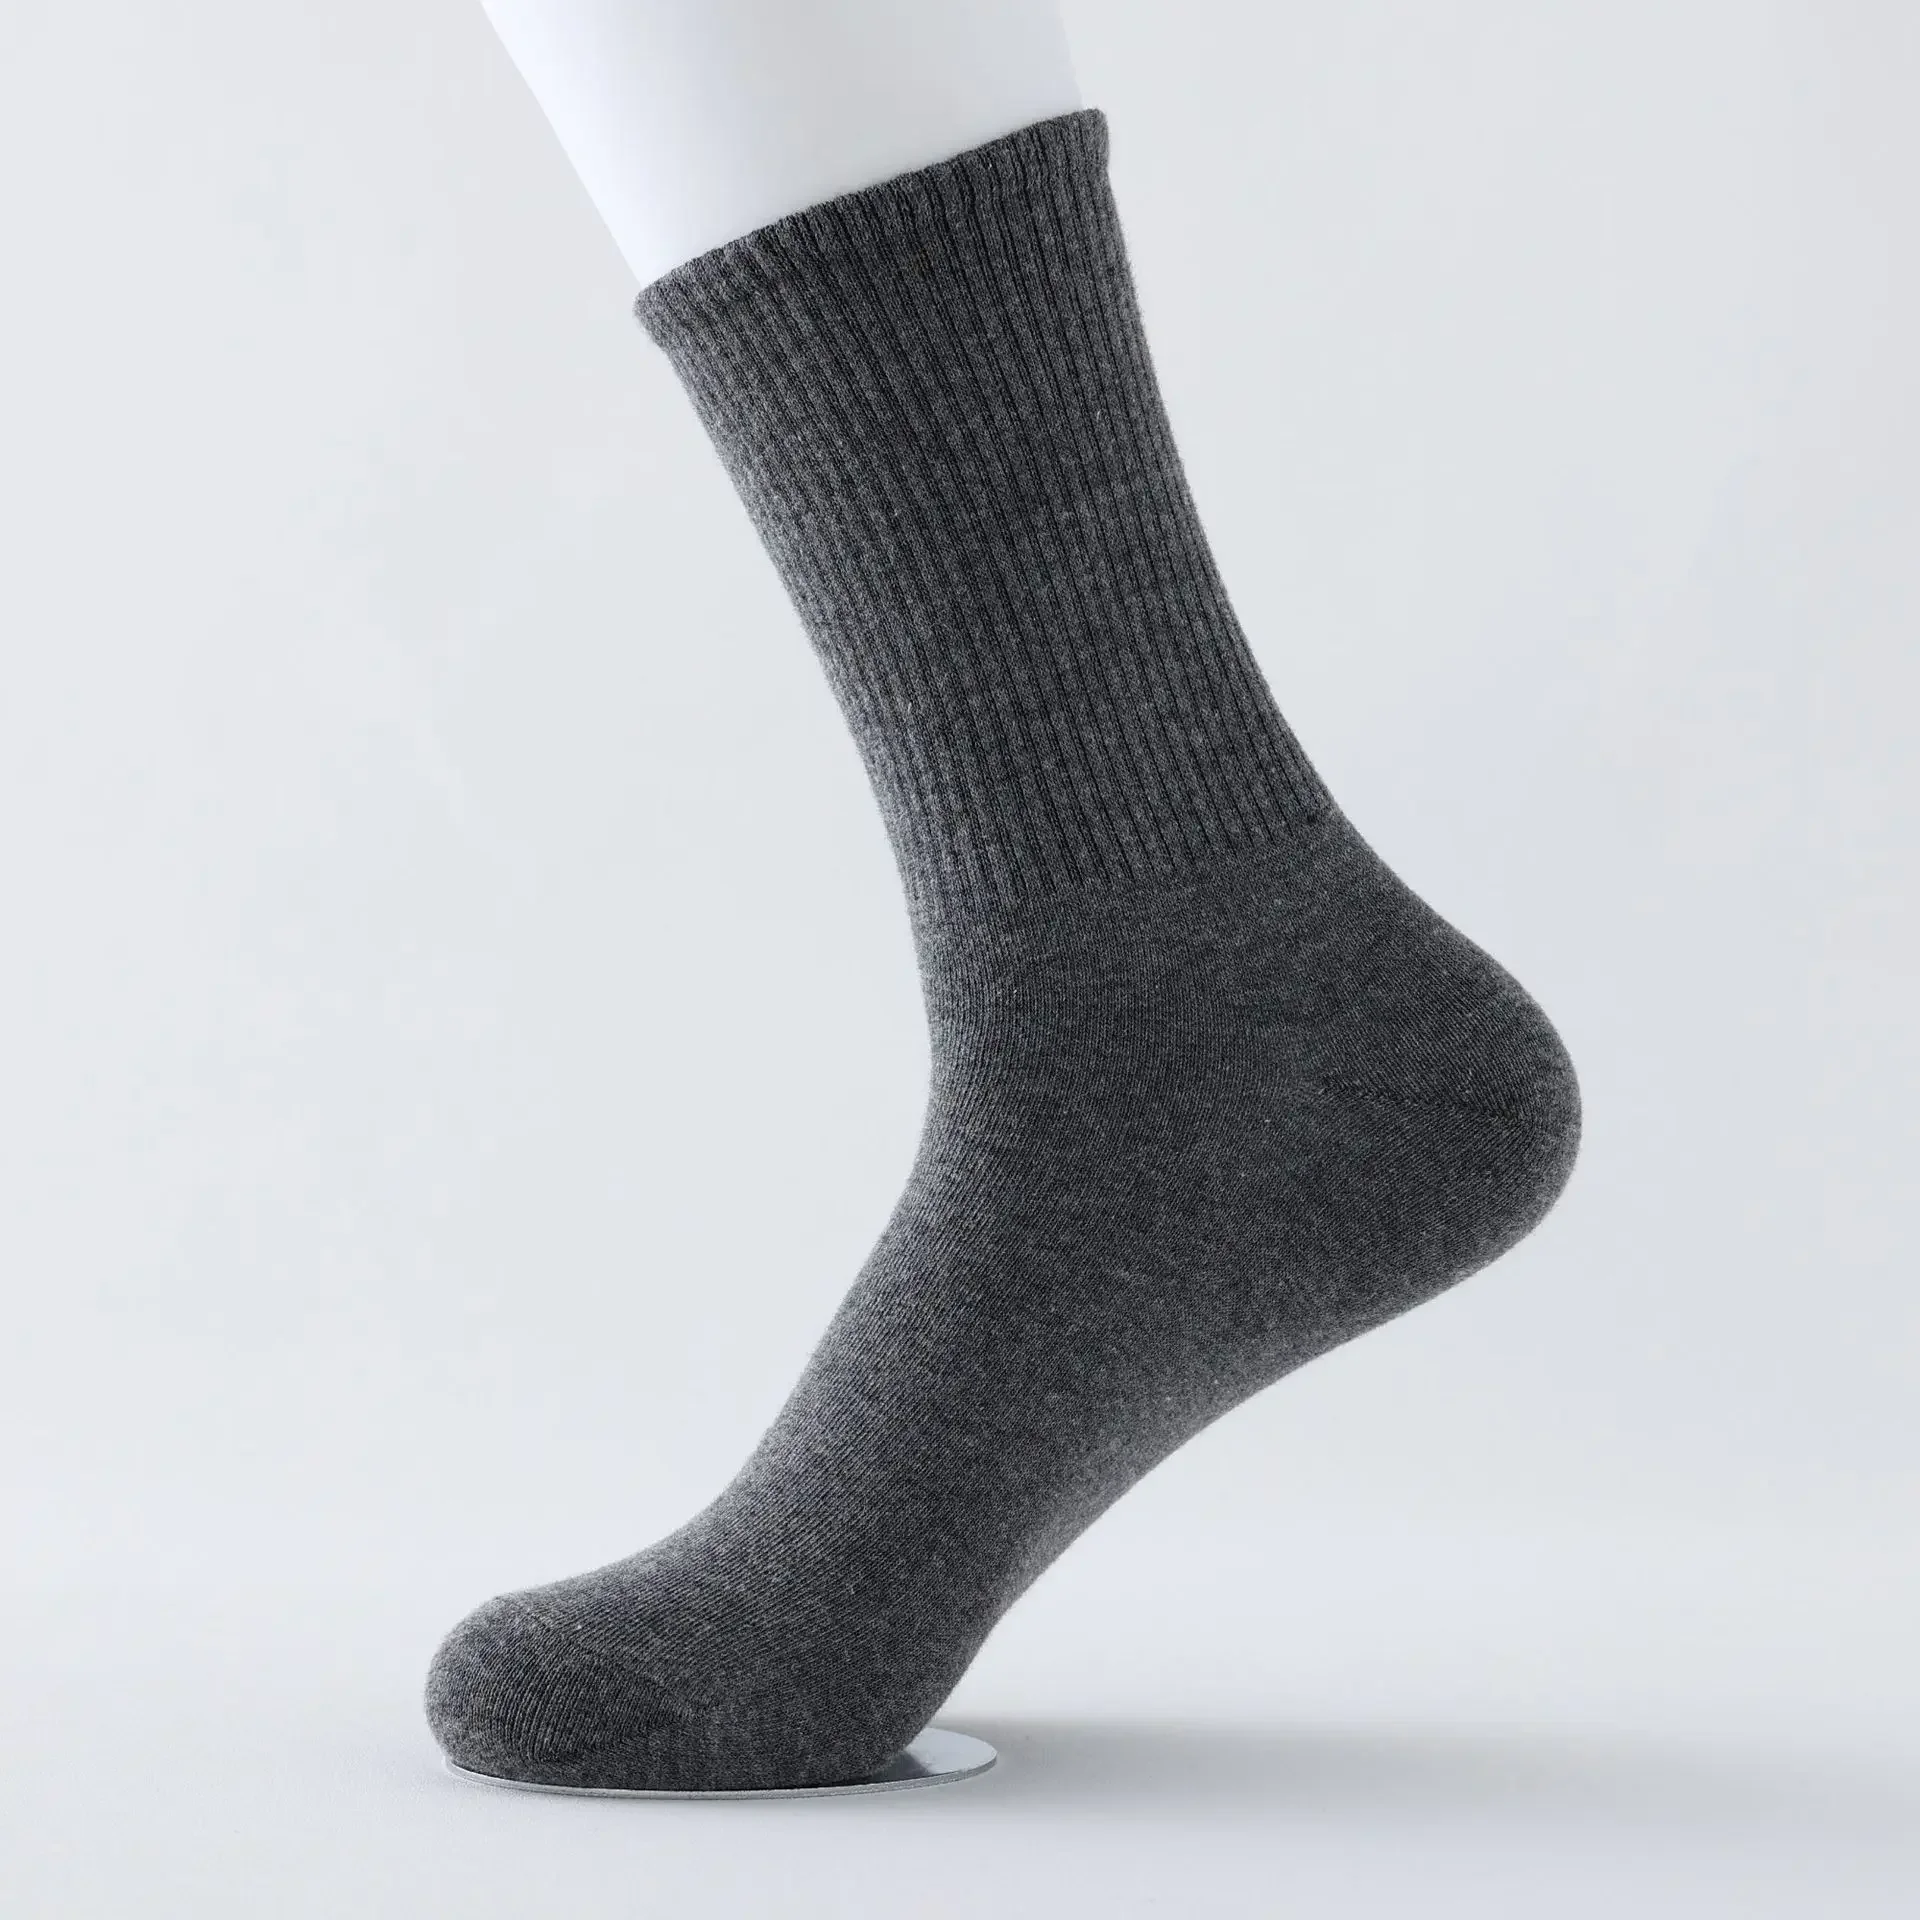 Nuovo prodotto calzini di cotone calzini da nave da uomo, calzini nascosti, bocca poco profonda, calzini riscaldati